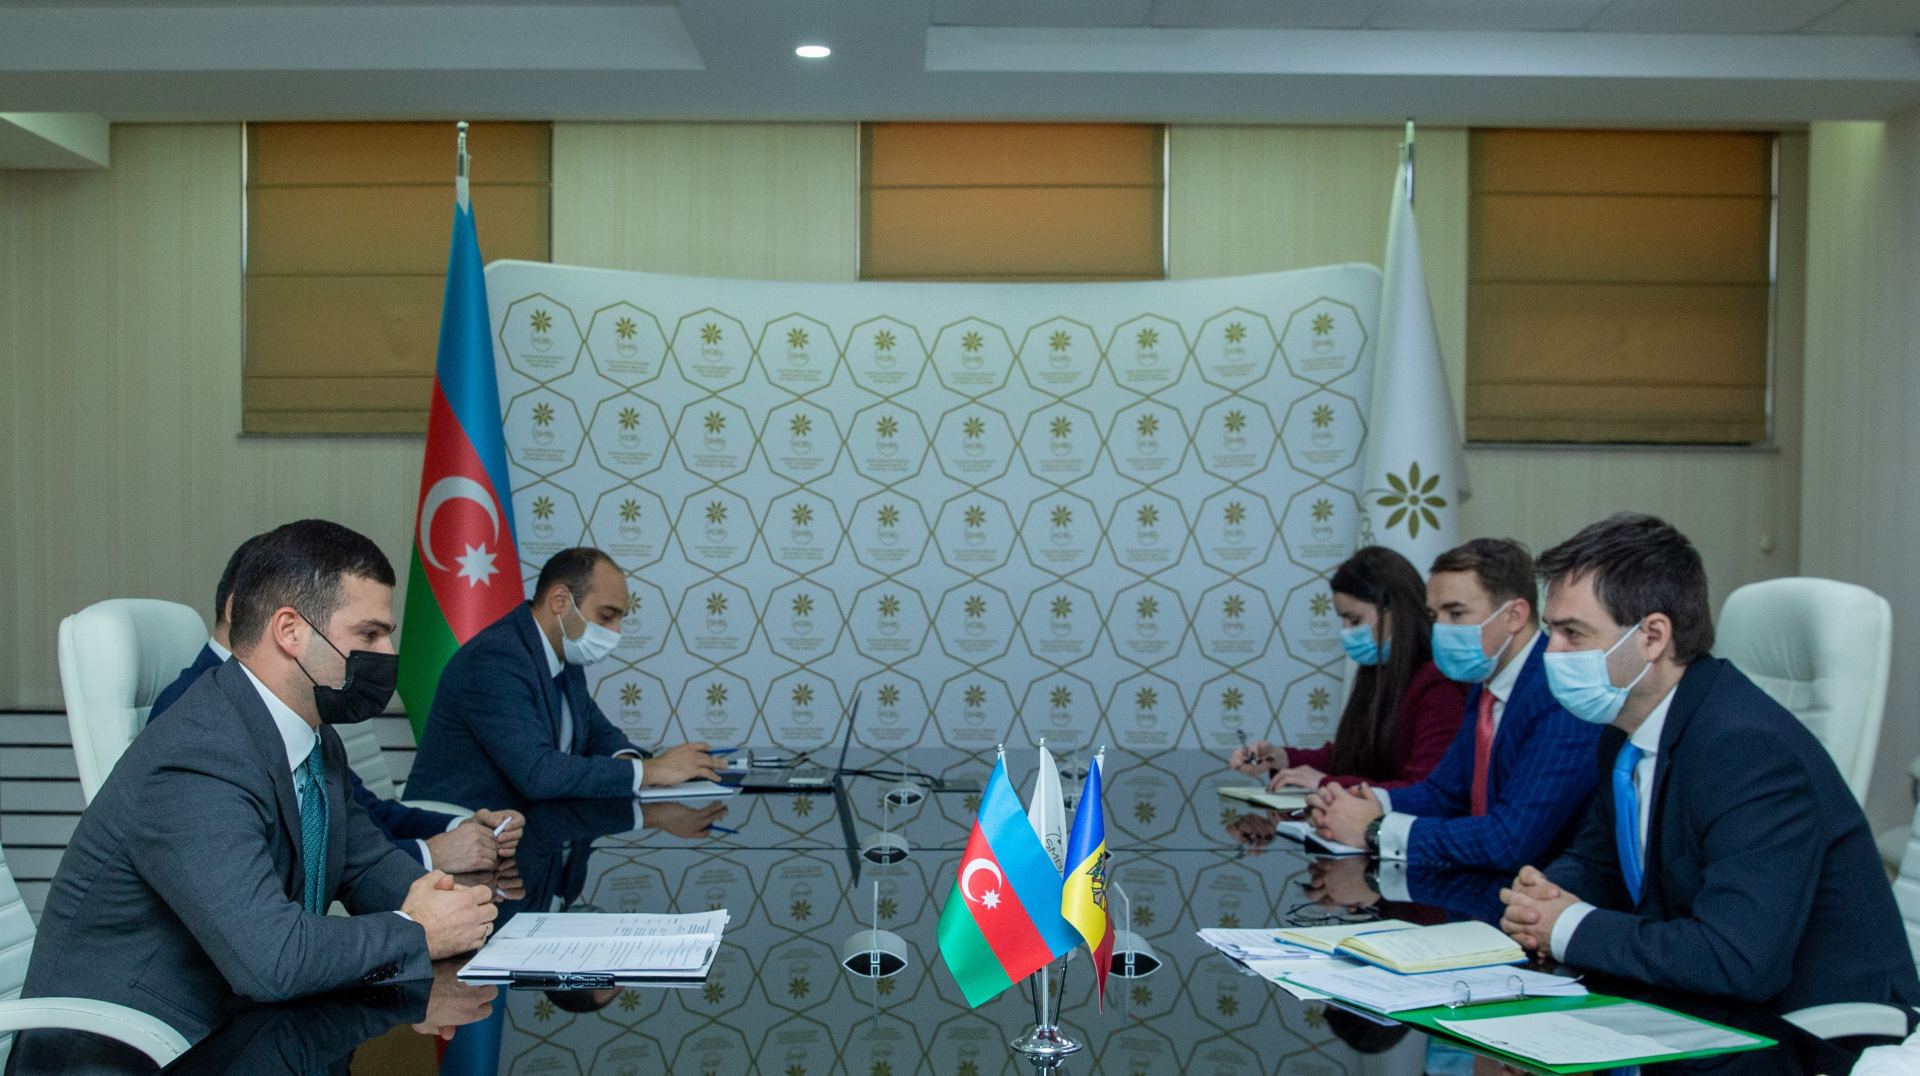 Молдова заинтересована в организации взаимных визитов и мероприятий с участием предпринимателей Азербайджана - глава МИД (ФОТО)